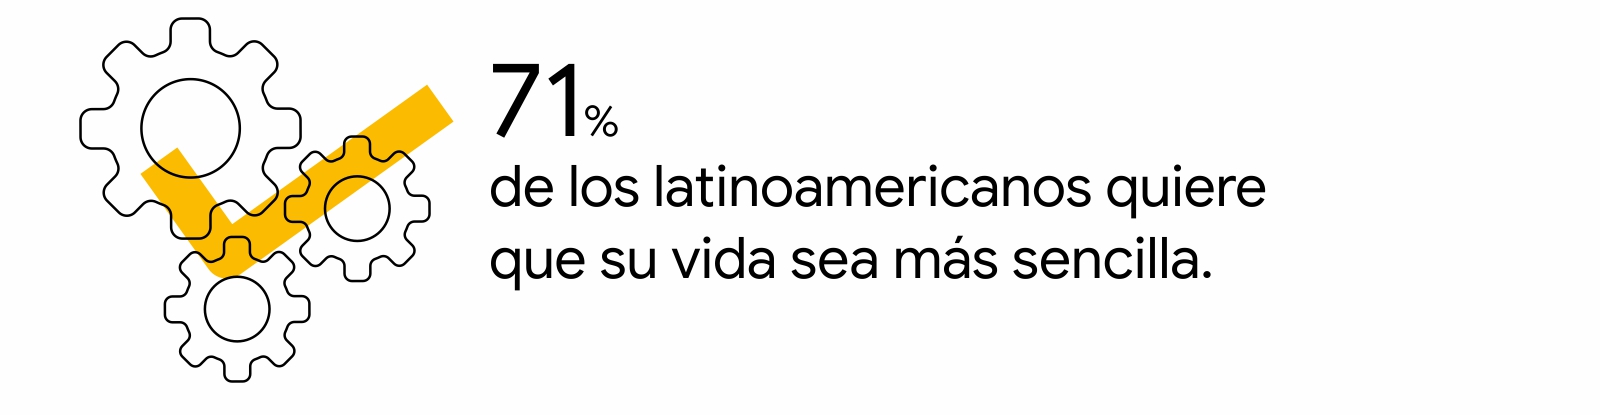 3 engranajes en blanco y negro, sobre él, un tilde amarilo. A la derecha, la leyenda: 71% de los latinoamericanos quiere que su vida sea más sencilla.